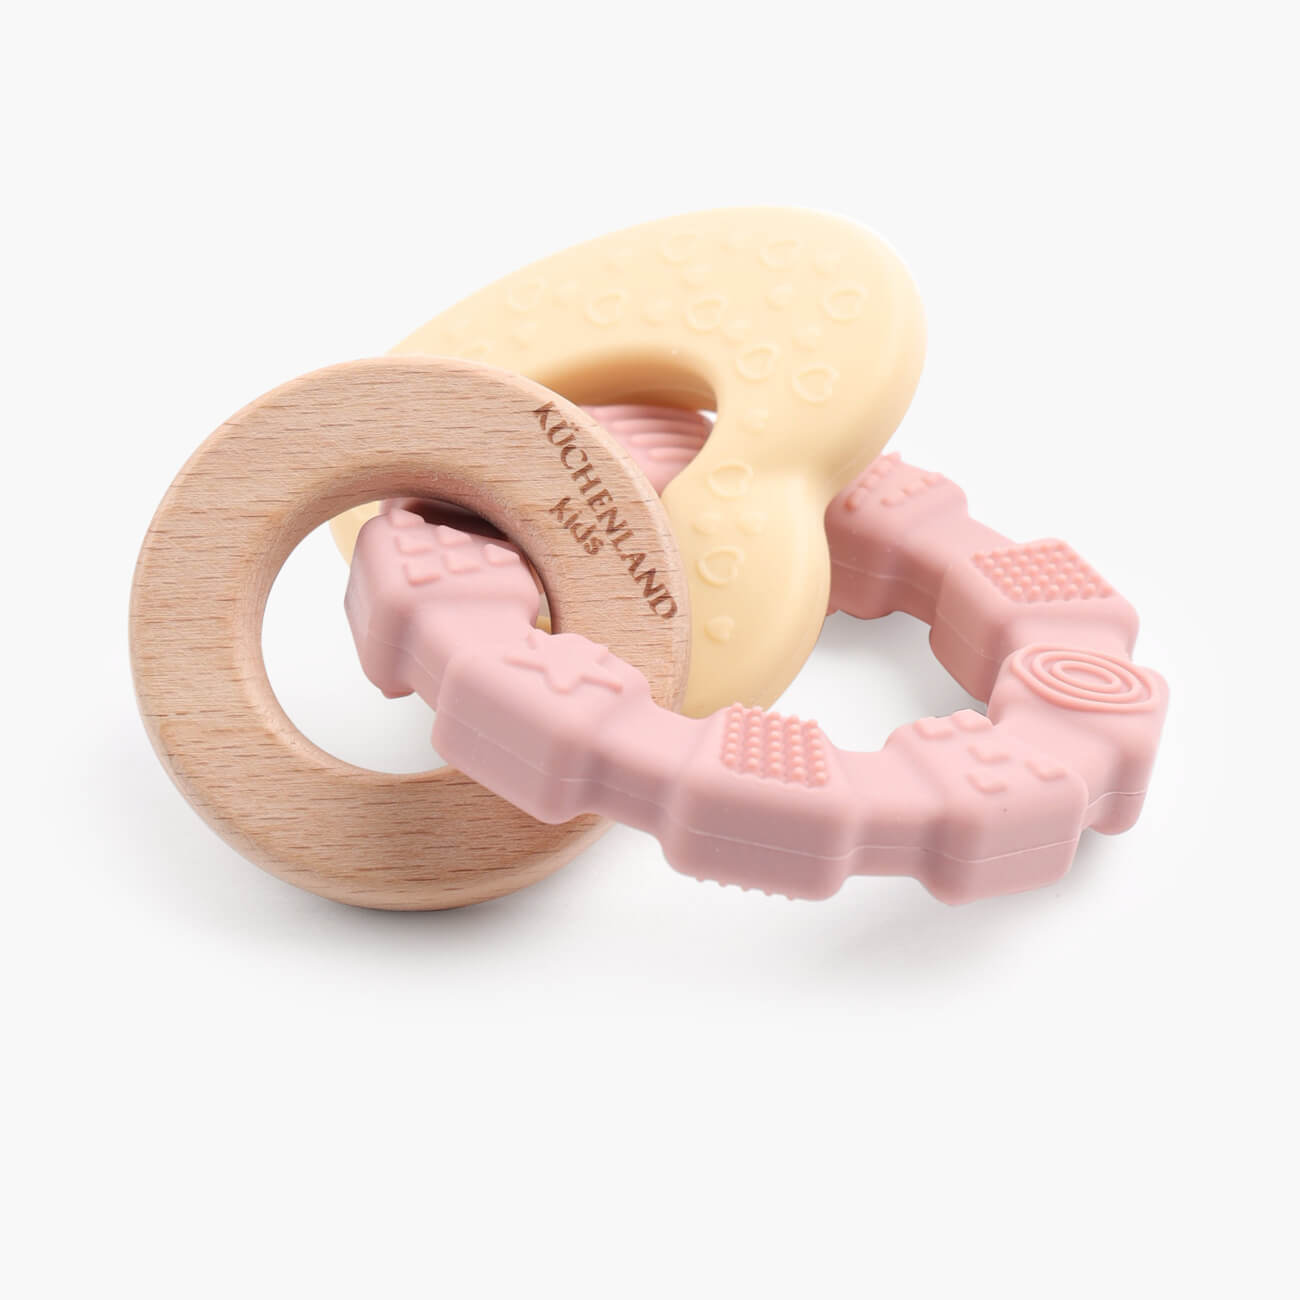 Игрушка-прорезыватель, 2 подвески, на кольце, силикон/дерево, розовая, Сердце, Kiddy flamingo игрушка для попугая веревочные кольца